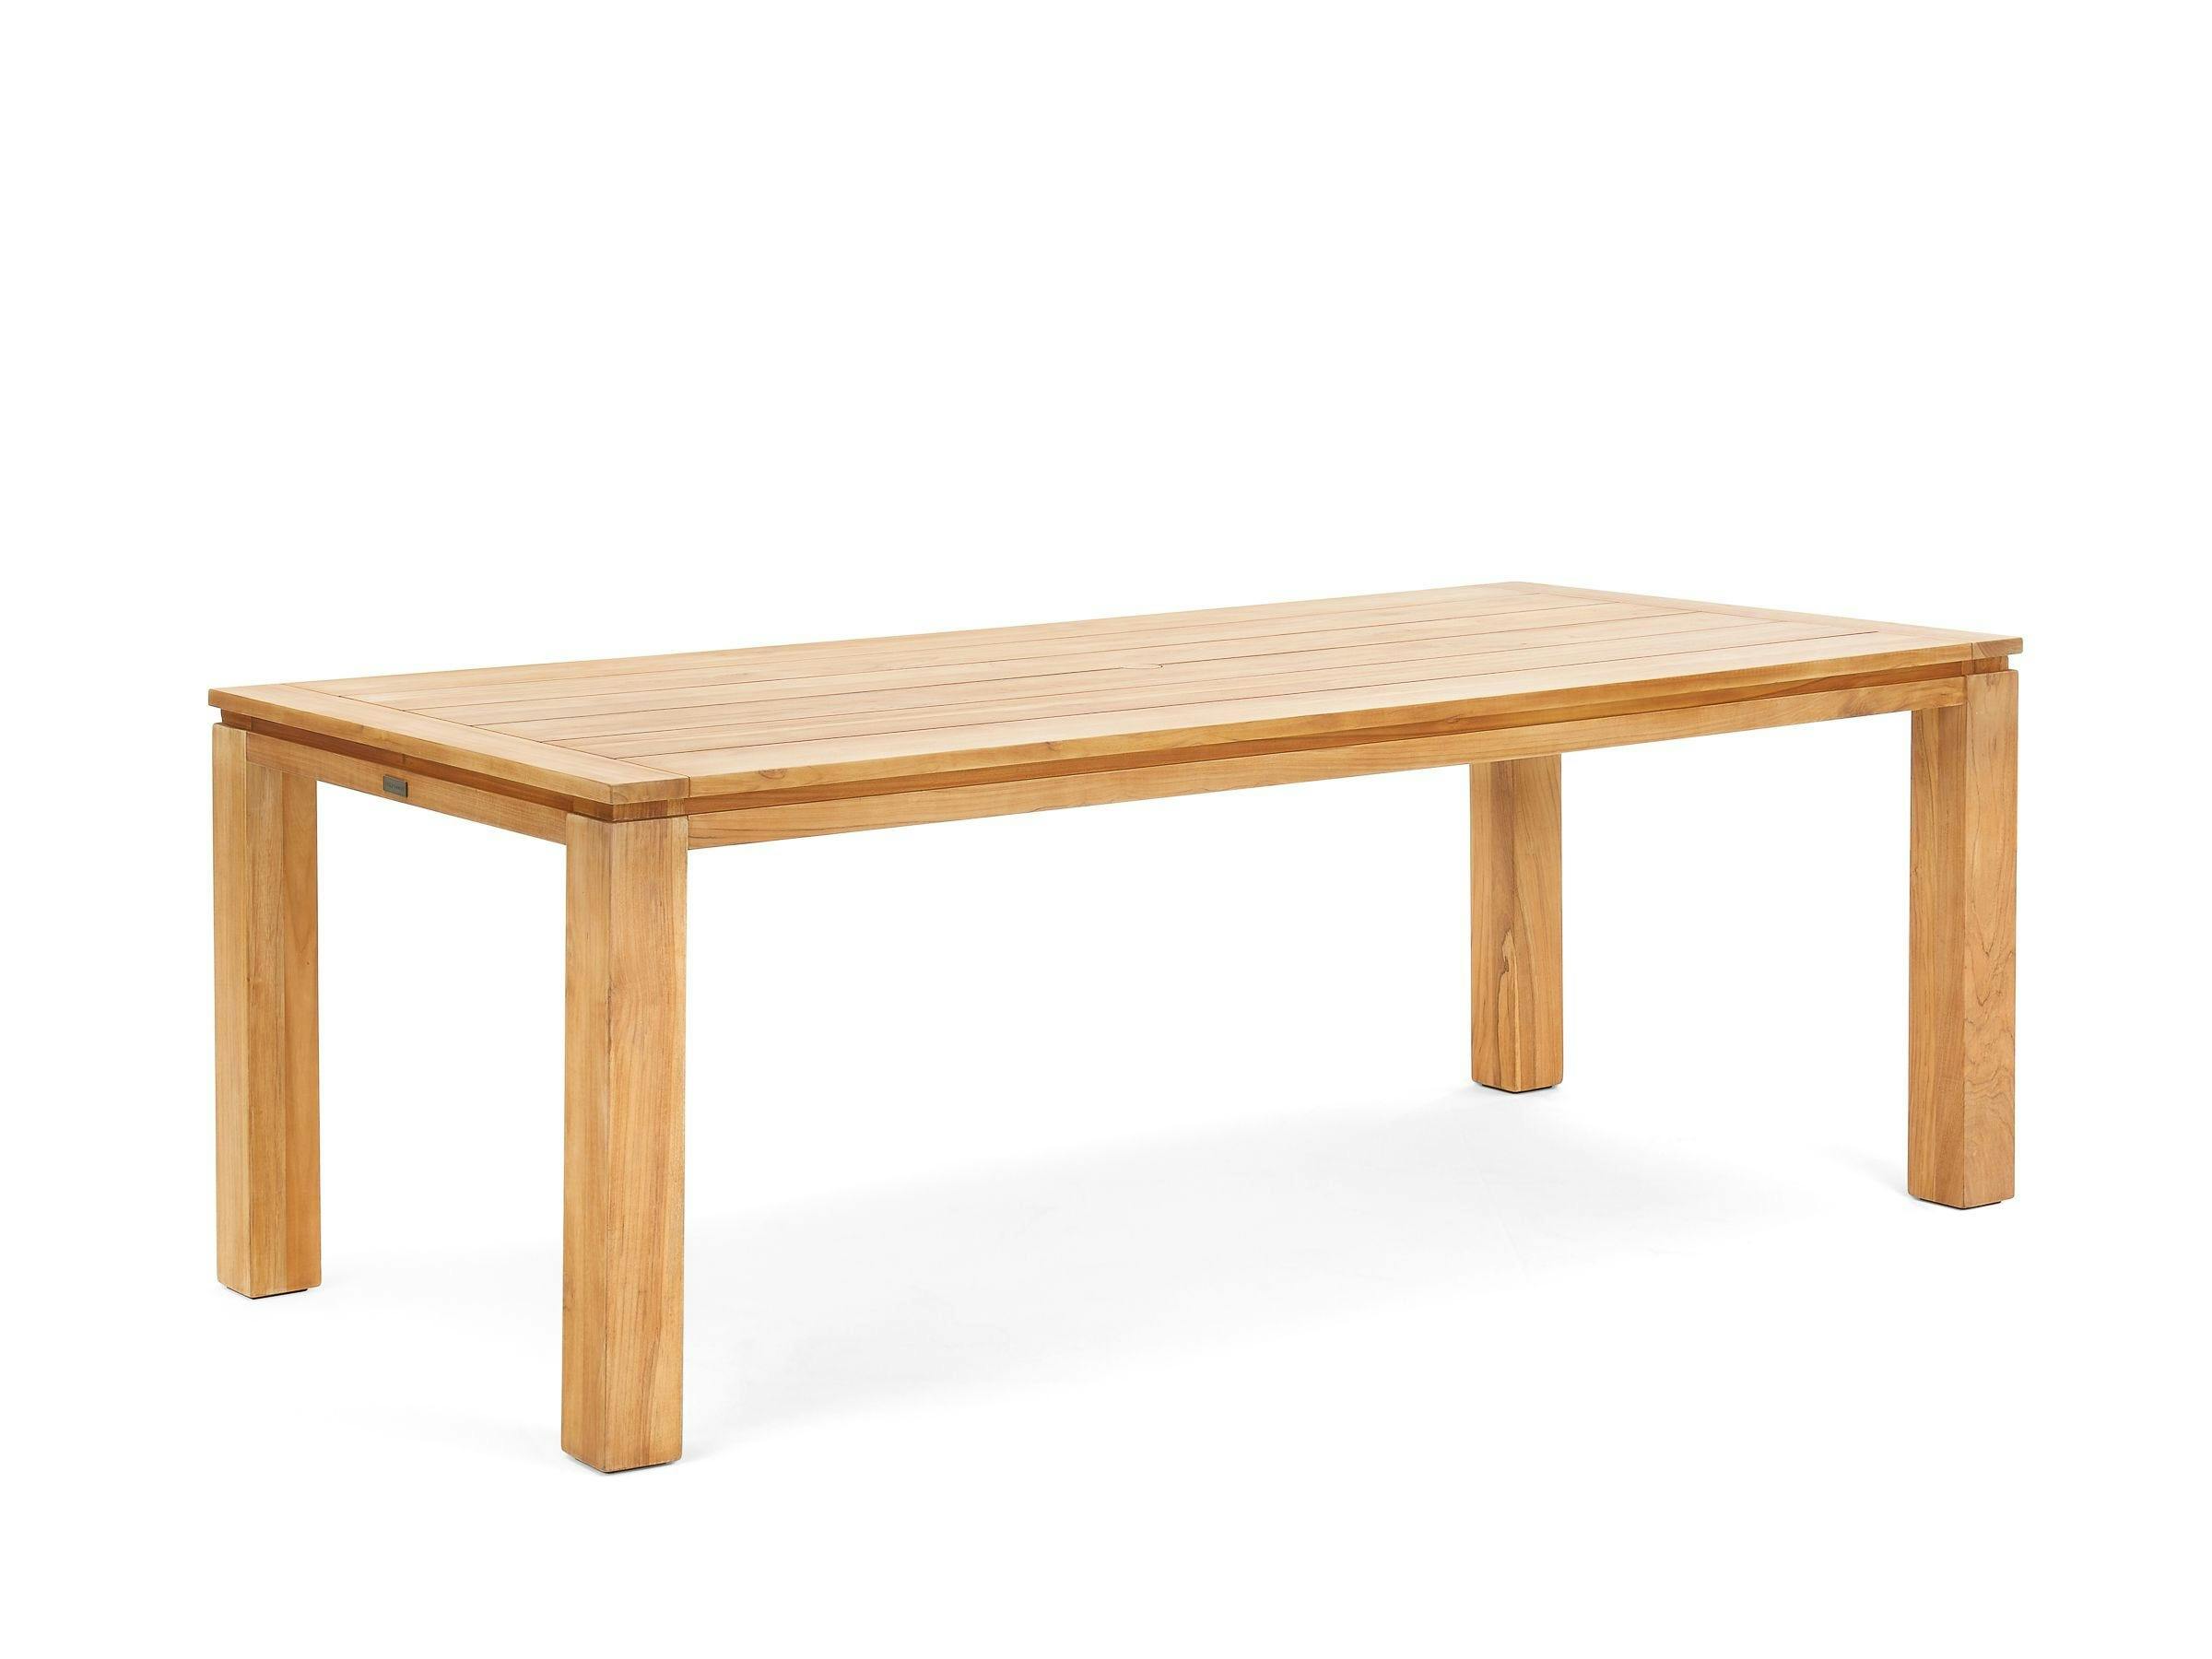 All-Natural Teak 40" x 88" Rectangular Dining Table